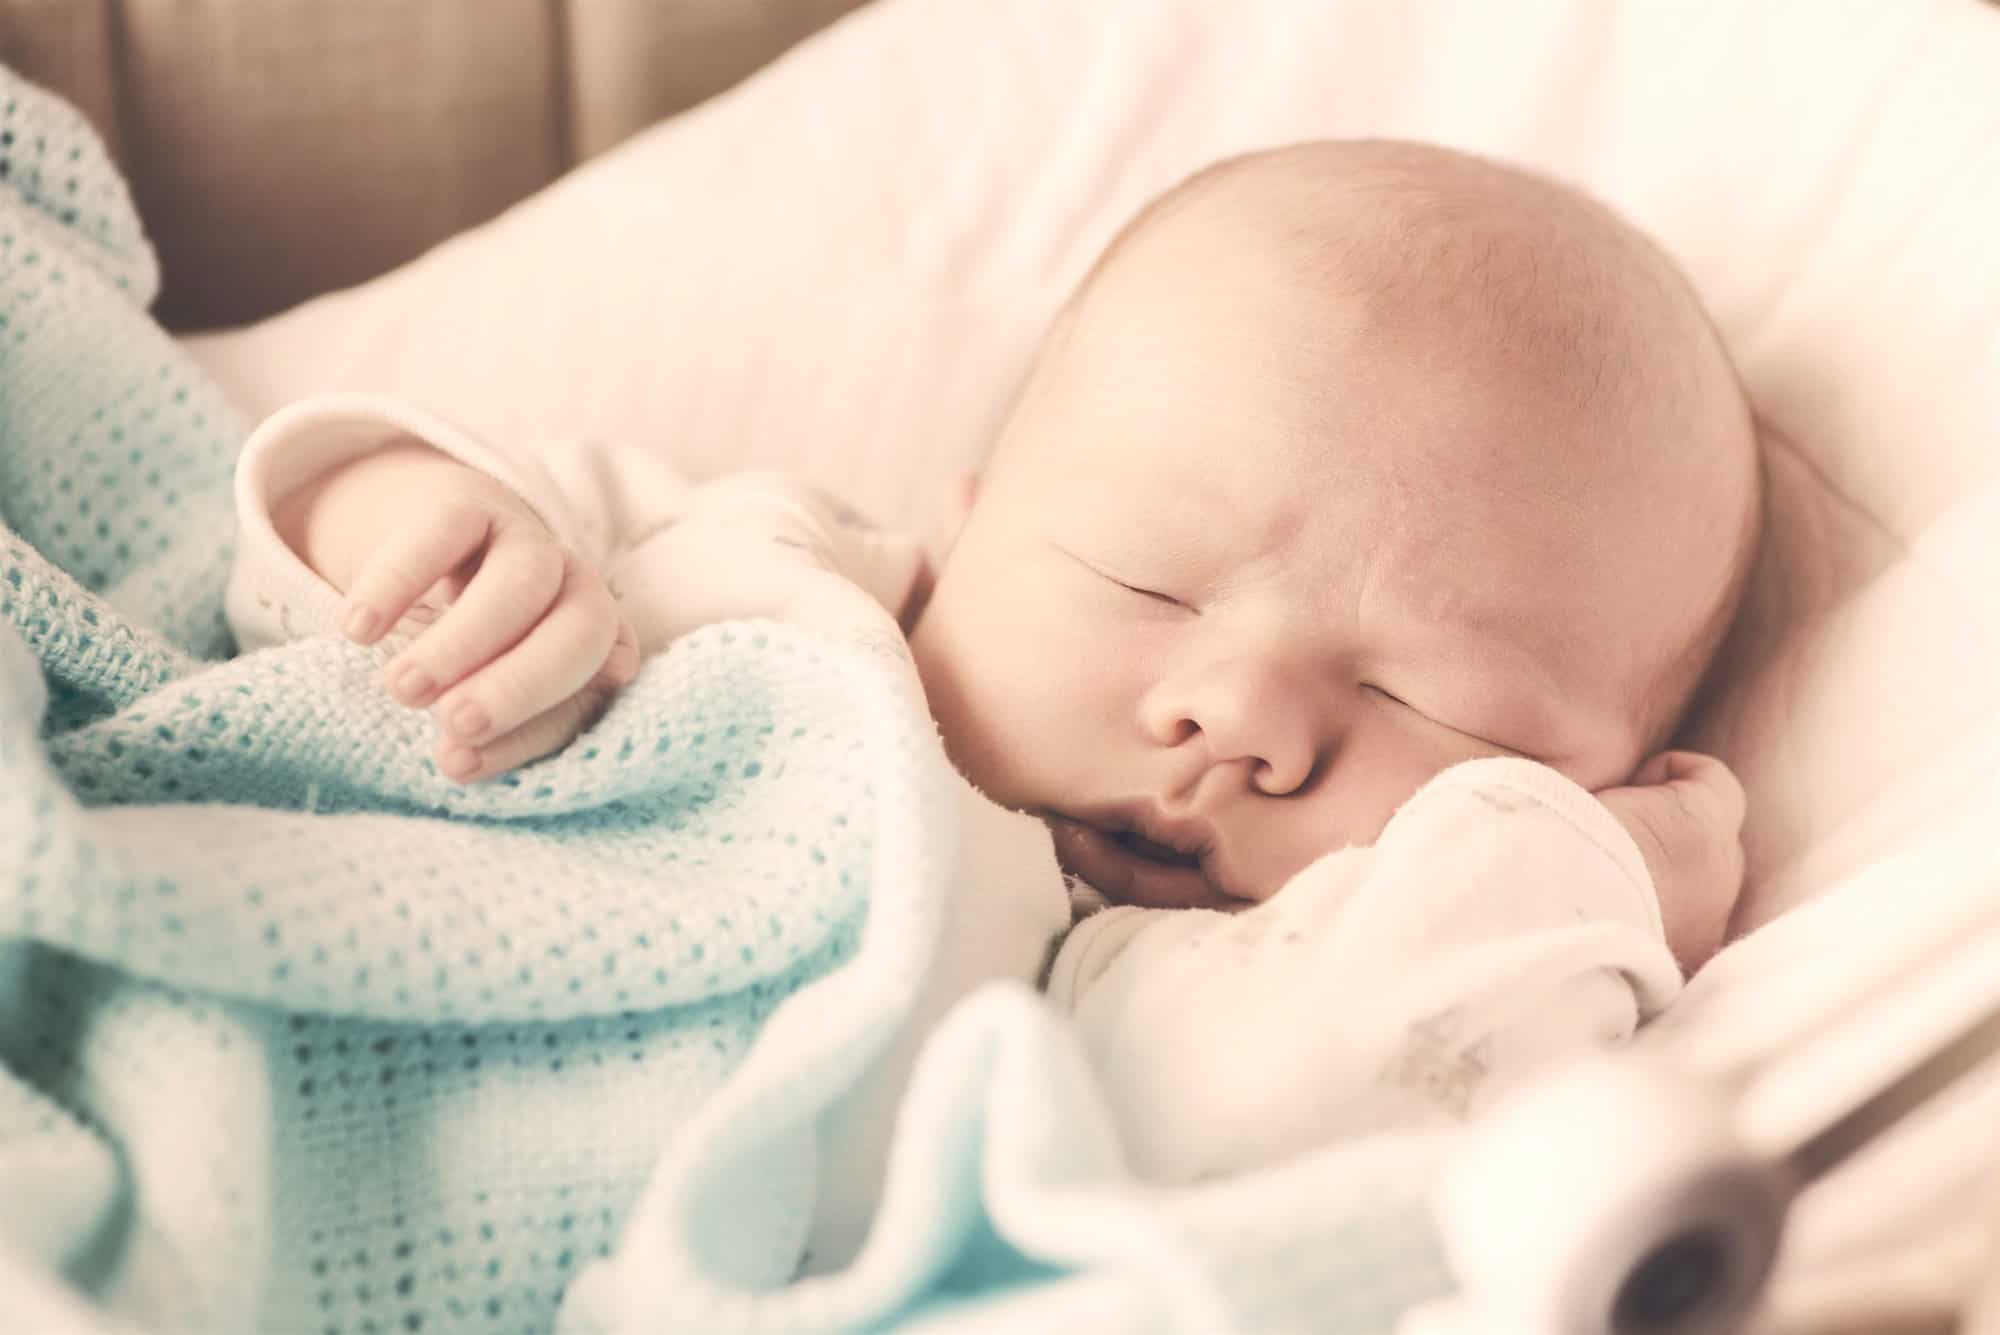 Manta Cobertor Sleeping para Bebe de 06 meses. Recién Nacido